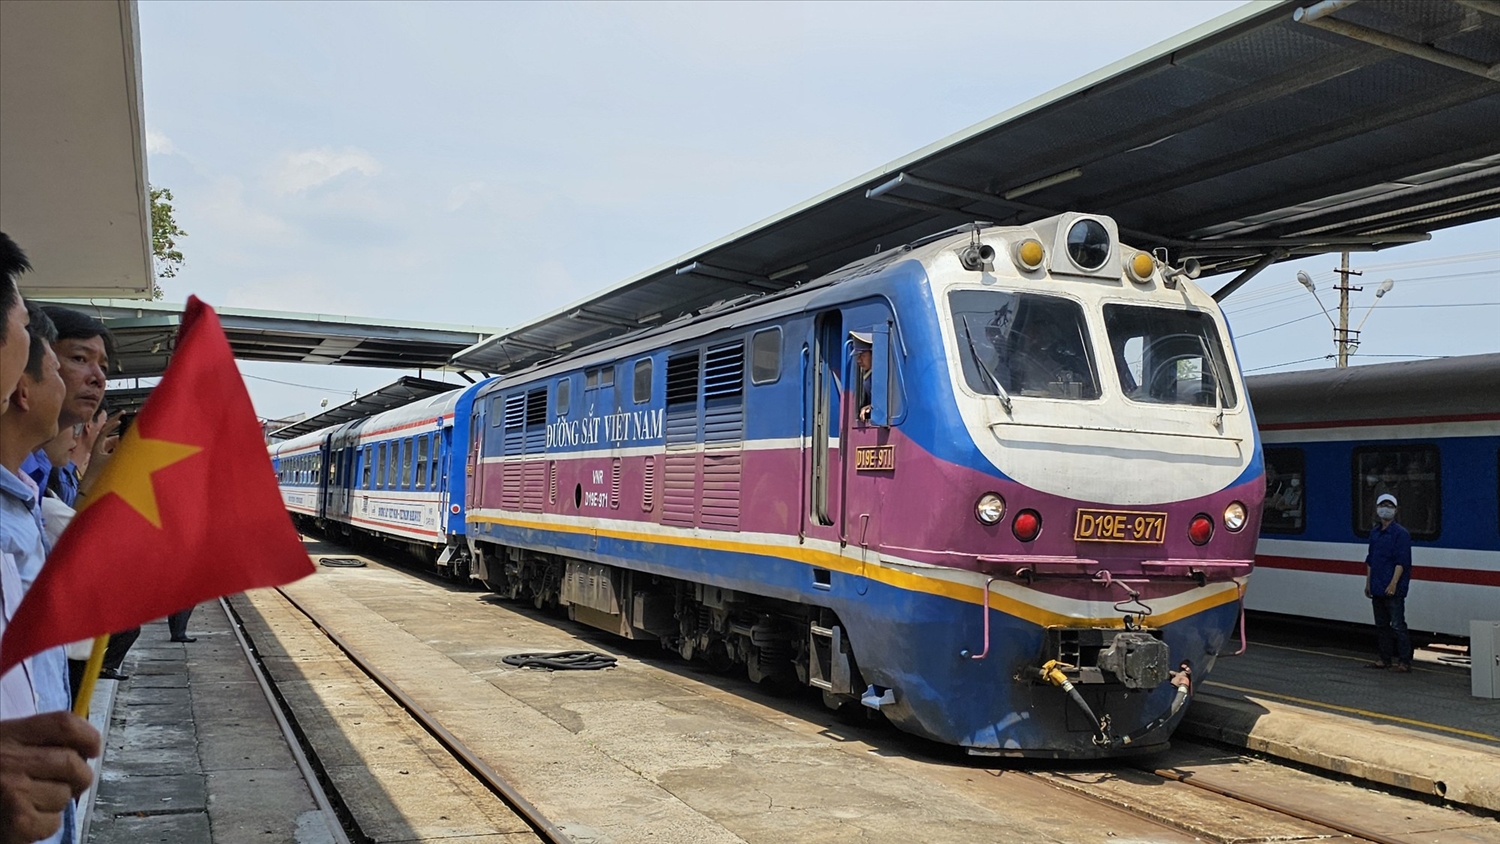 Đoàn tàu “Kết nối di sản miền Trung” là một sản phẩm mới nhằm kết nối vùng, quảng bá du lịch của 2 địa phương Thừa Thiên Huế và thành phố Đà Nẵng.